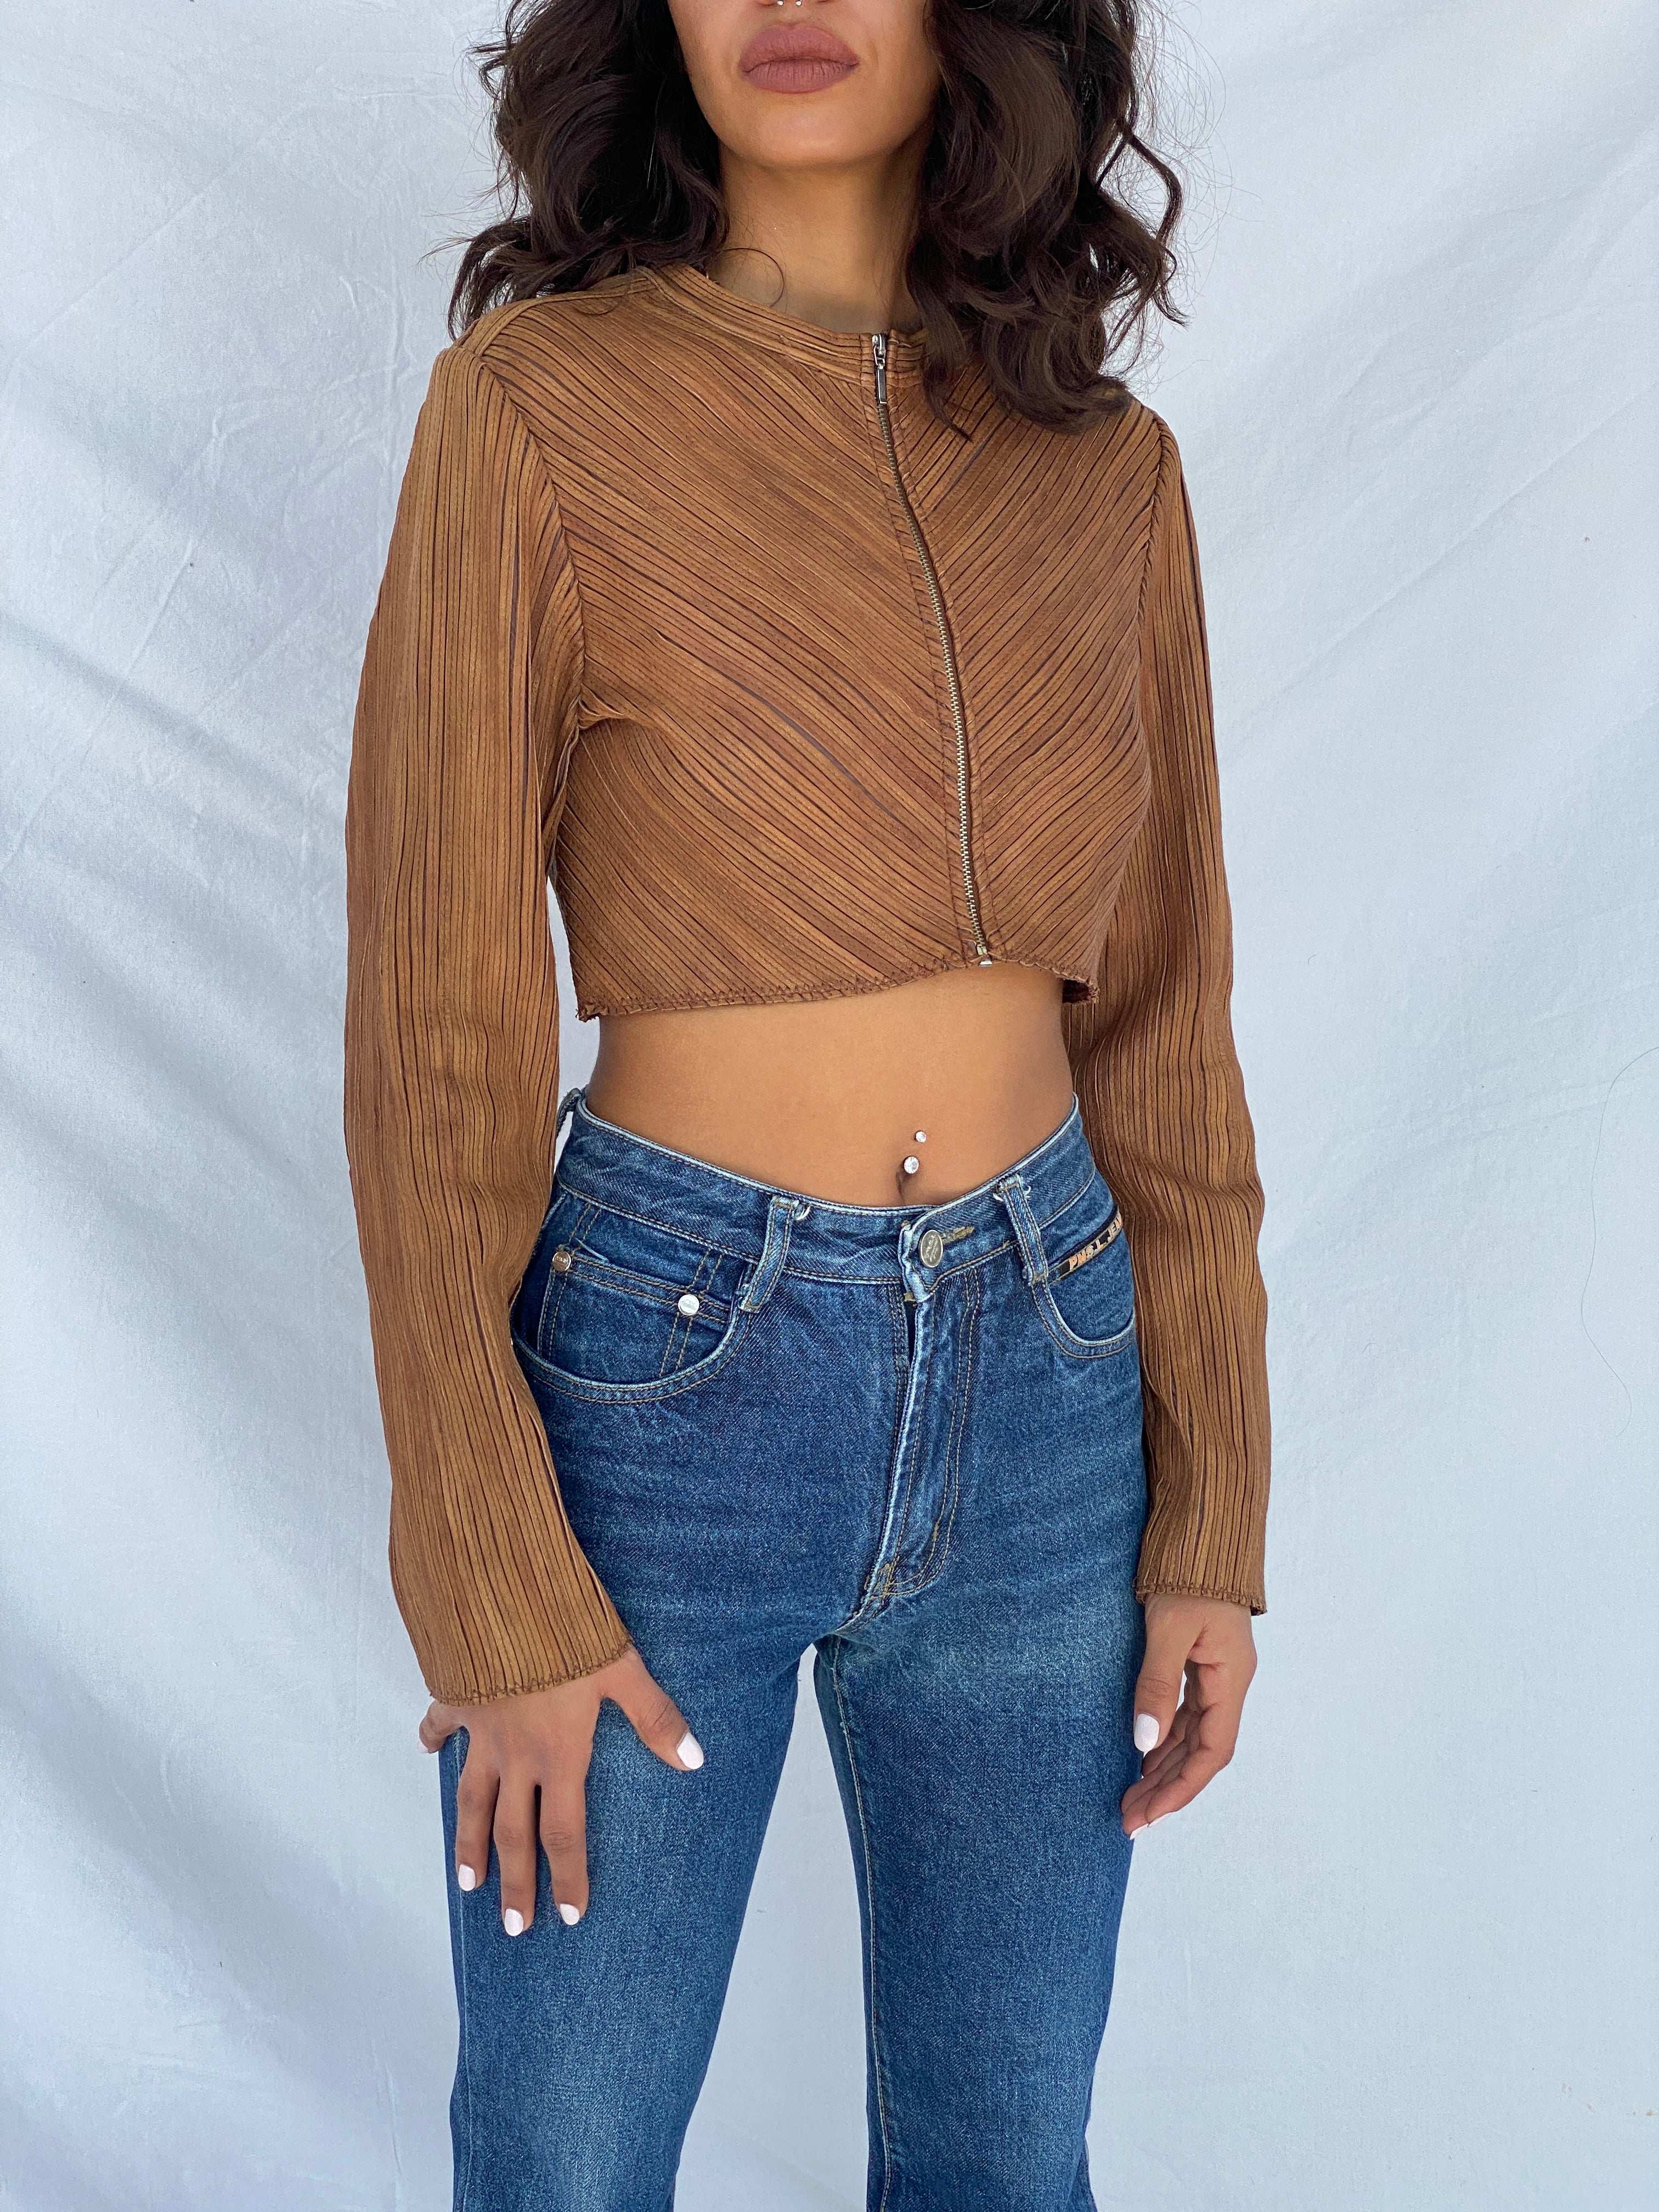 Vintage Brown Genuine Leather Zip Up Crop Top - Size S - Balagan Vintage Full Sleeve Top 90s, full sleeve top, Tojan, winter